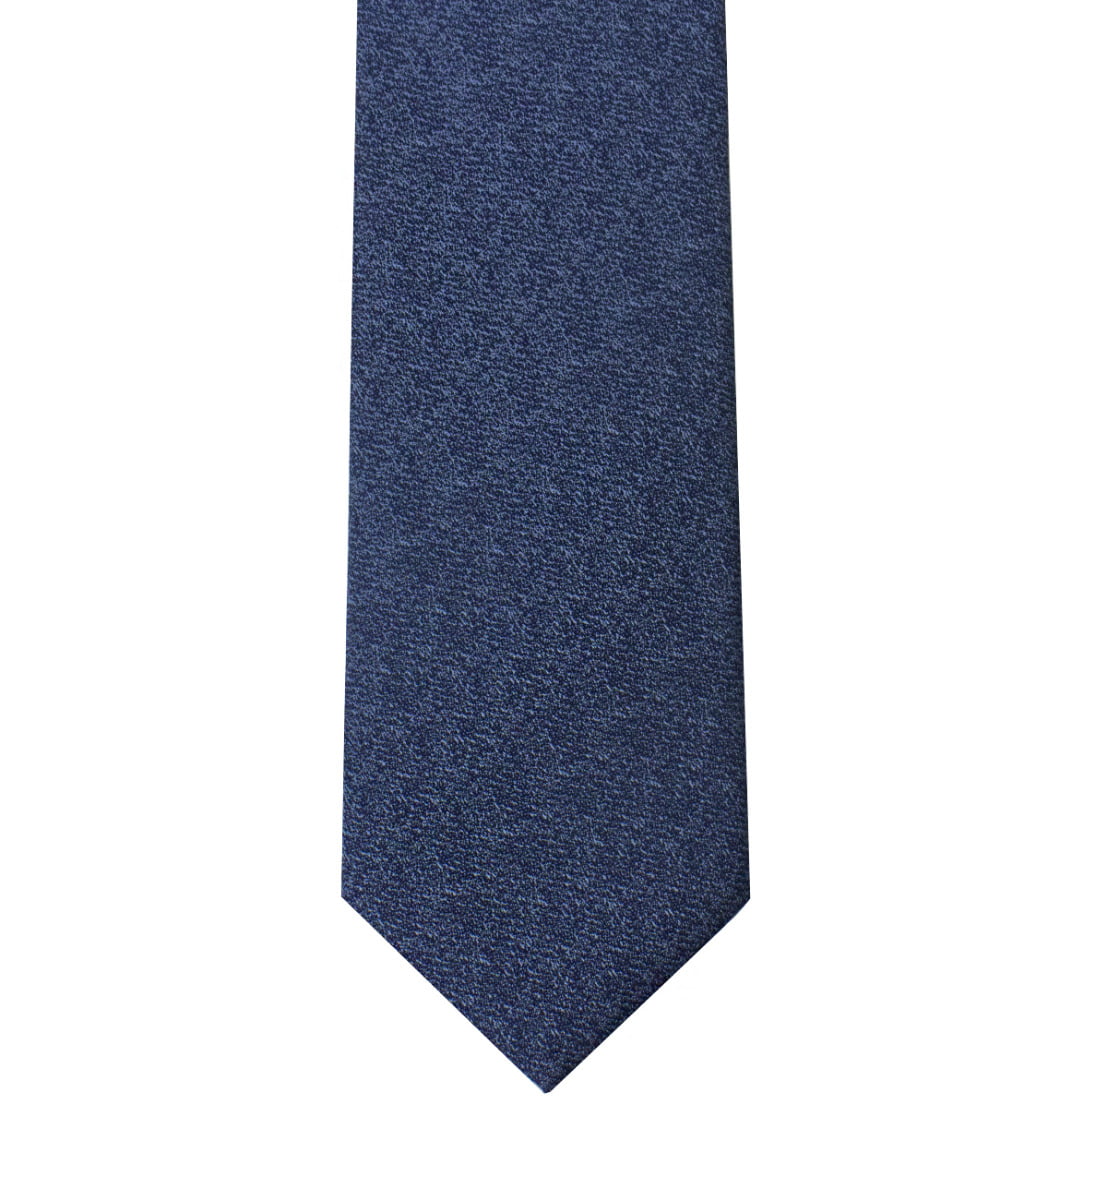 Cravatta uomo blu effetto melange 8cm di larghezza made in italy